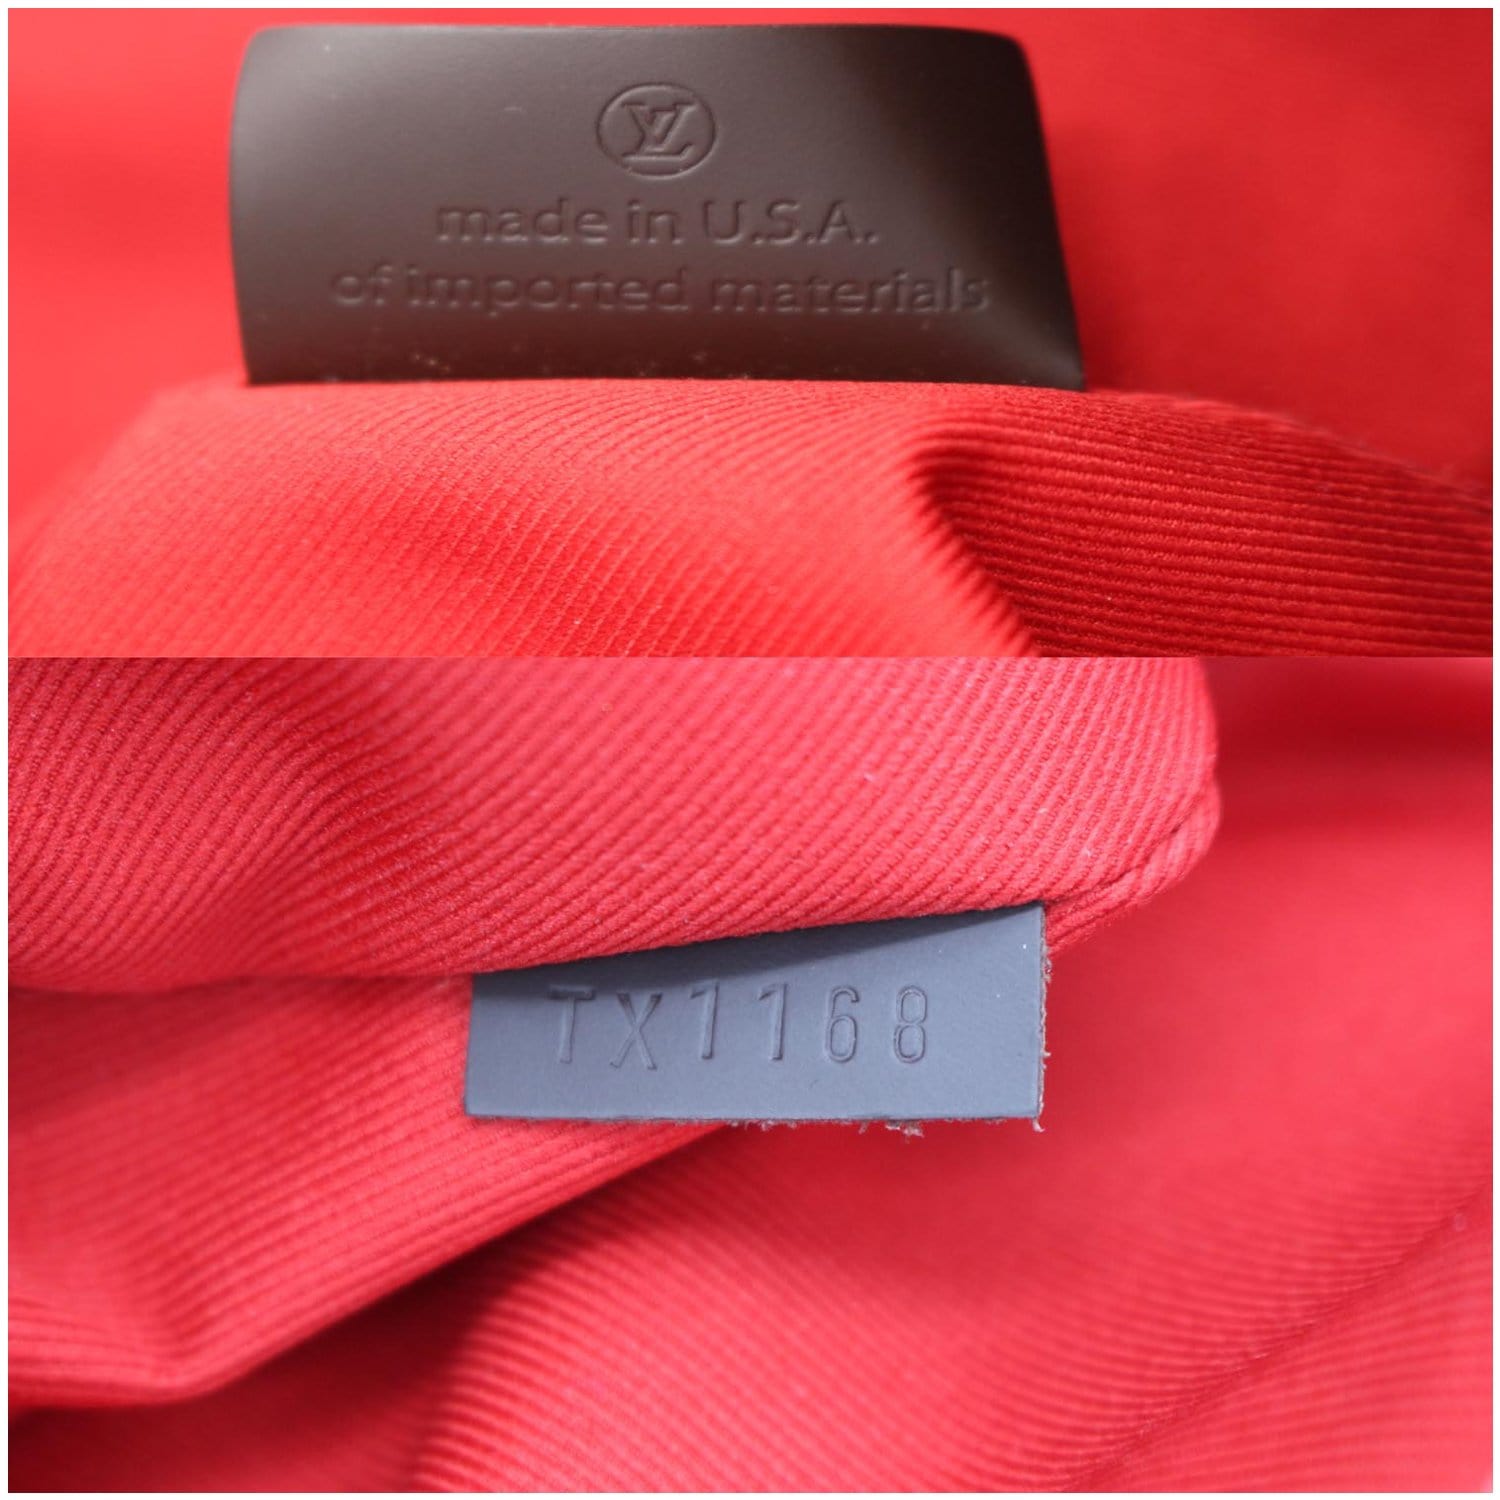 UhfmrShops, Louis Vuitton Graceful Handbag 397733